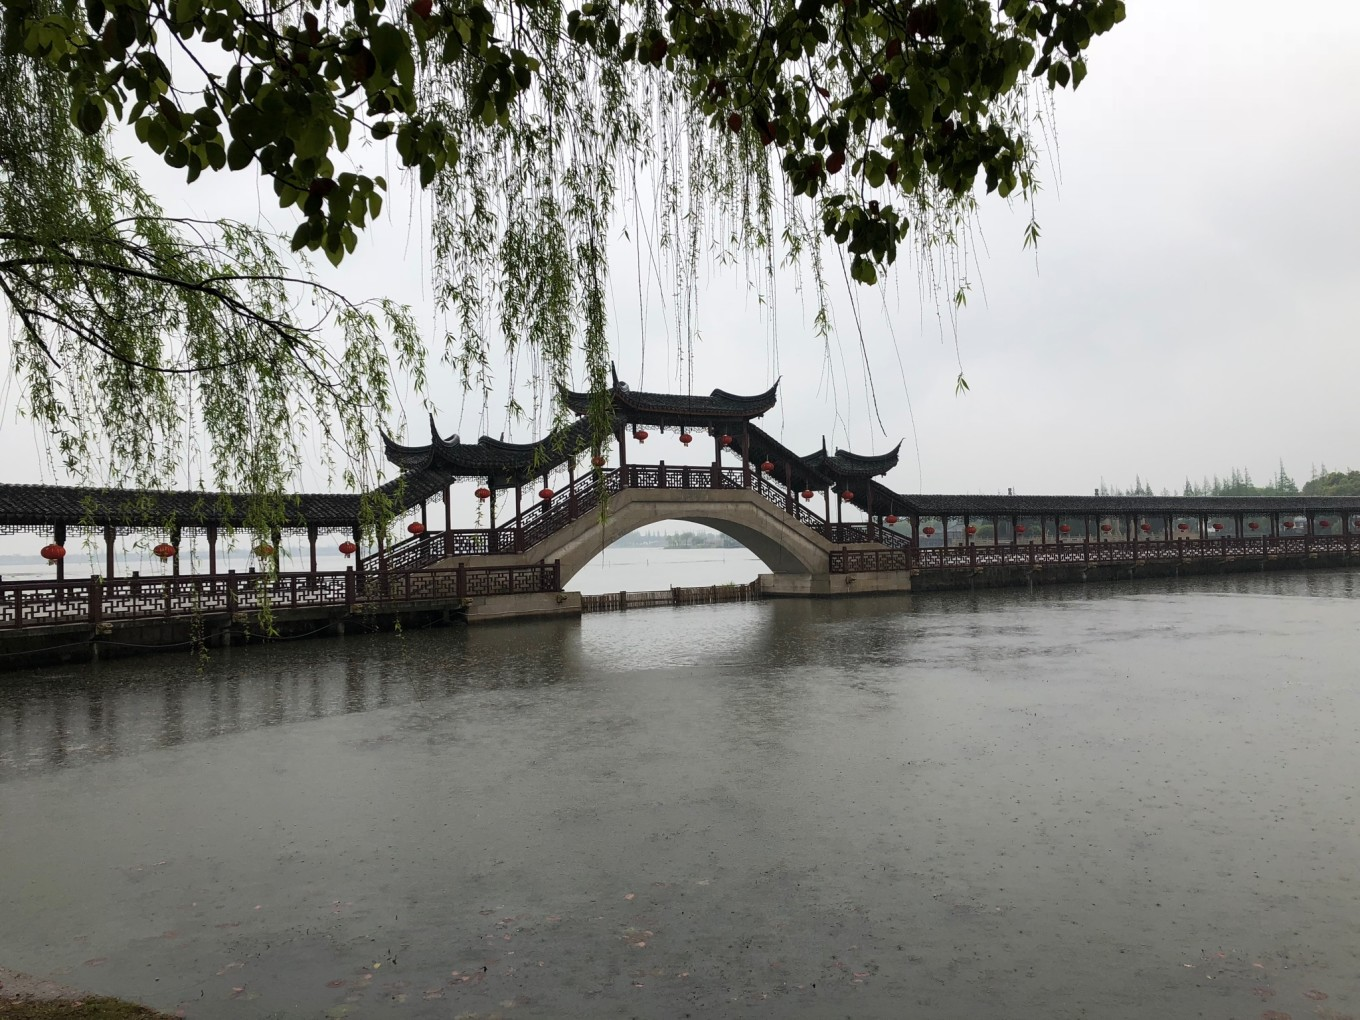 「上有天堂、下有蘇杭。」、杭州でおすすめの観光スポット10選 | sykes218のブログ